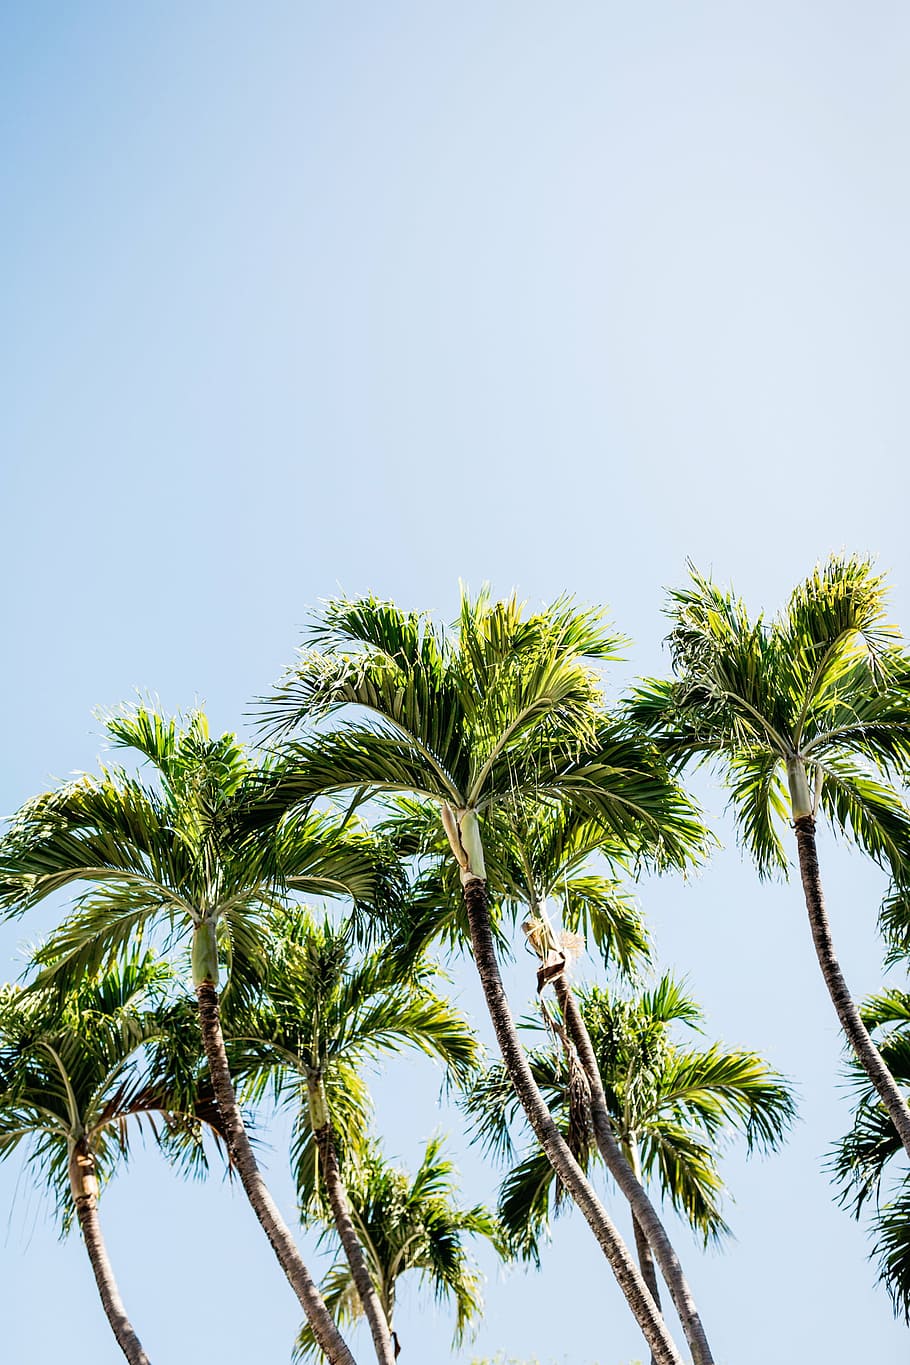 palmeras verdes, naturaleza, árboles, plantas, azul, cielo, árbol, palmera, verano, al aire libre